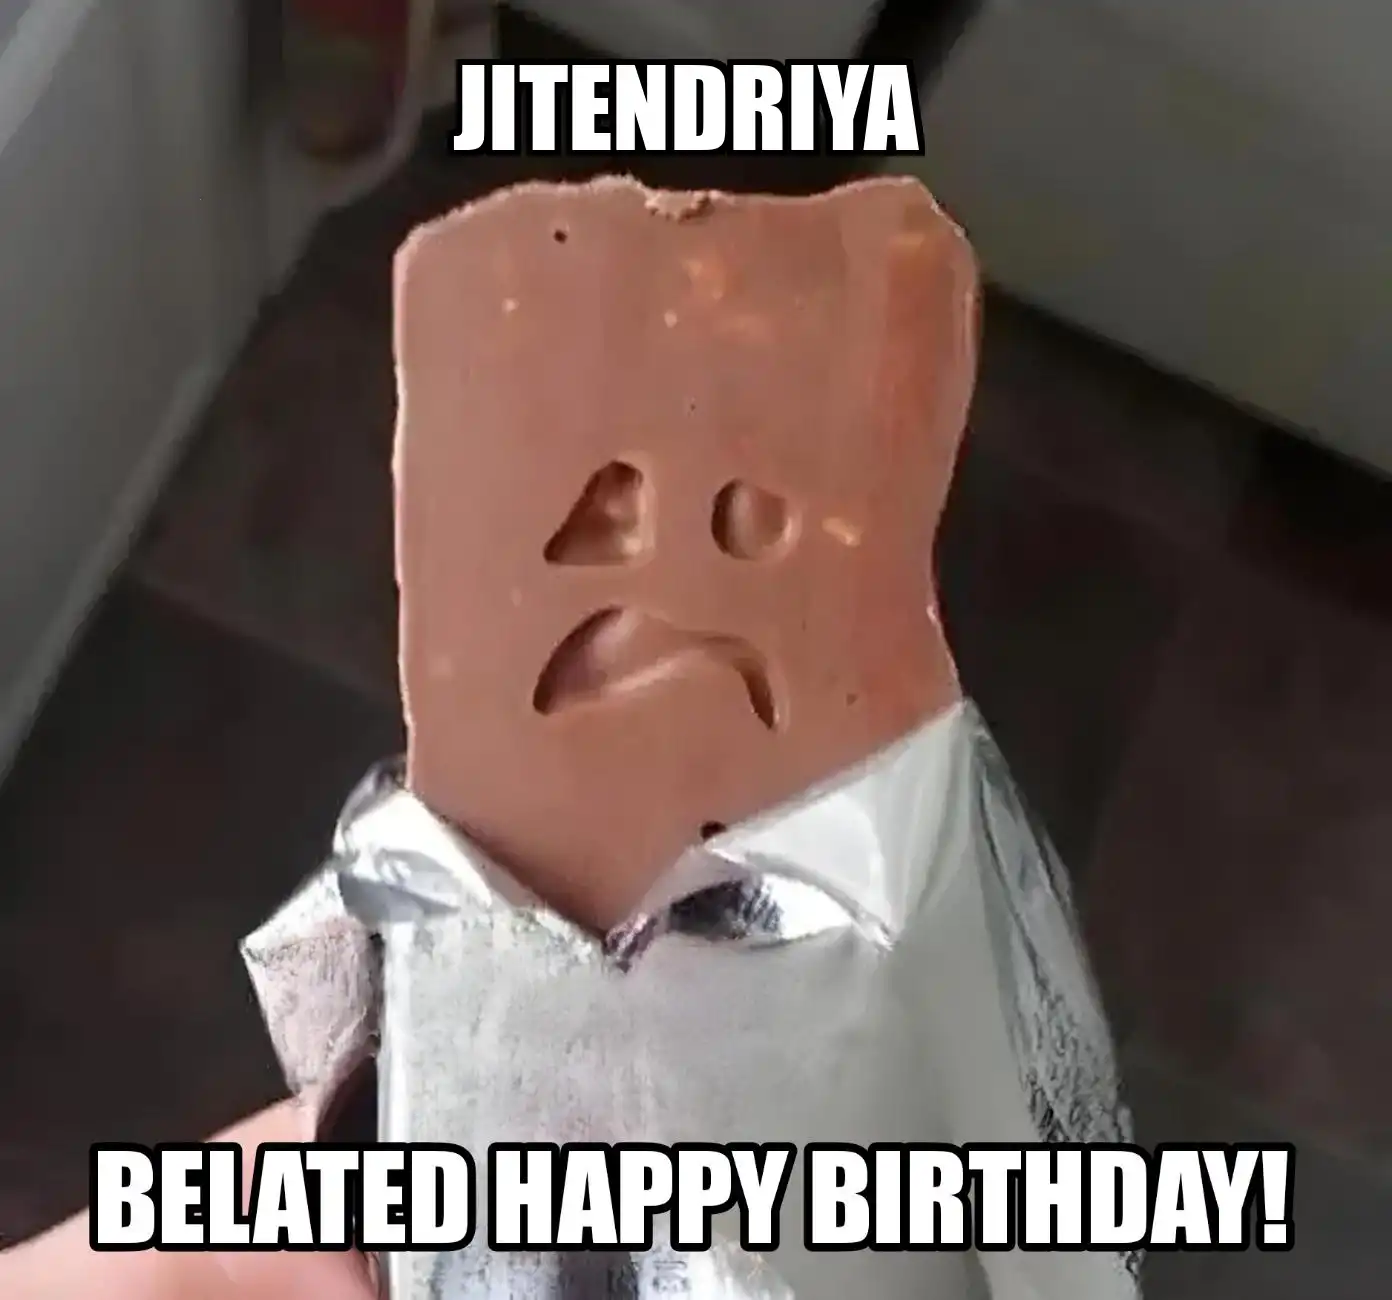 Happy Birthday Jitendriya Belated Happy Birthday Meme